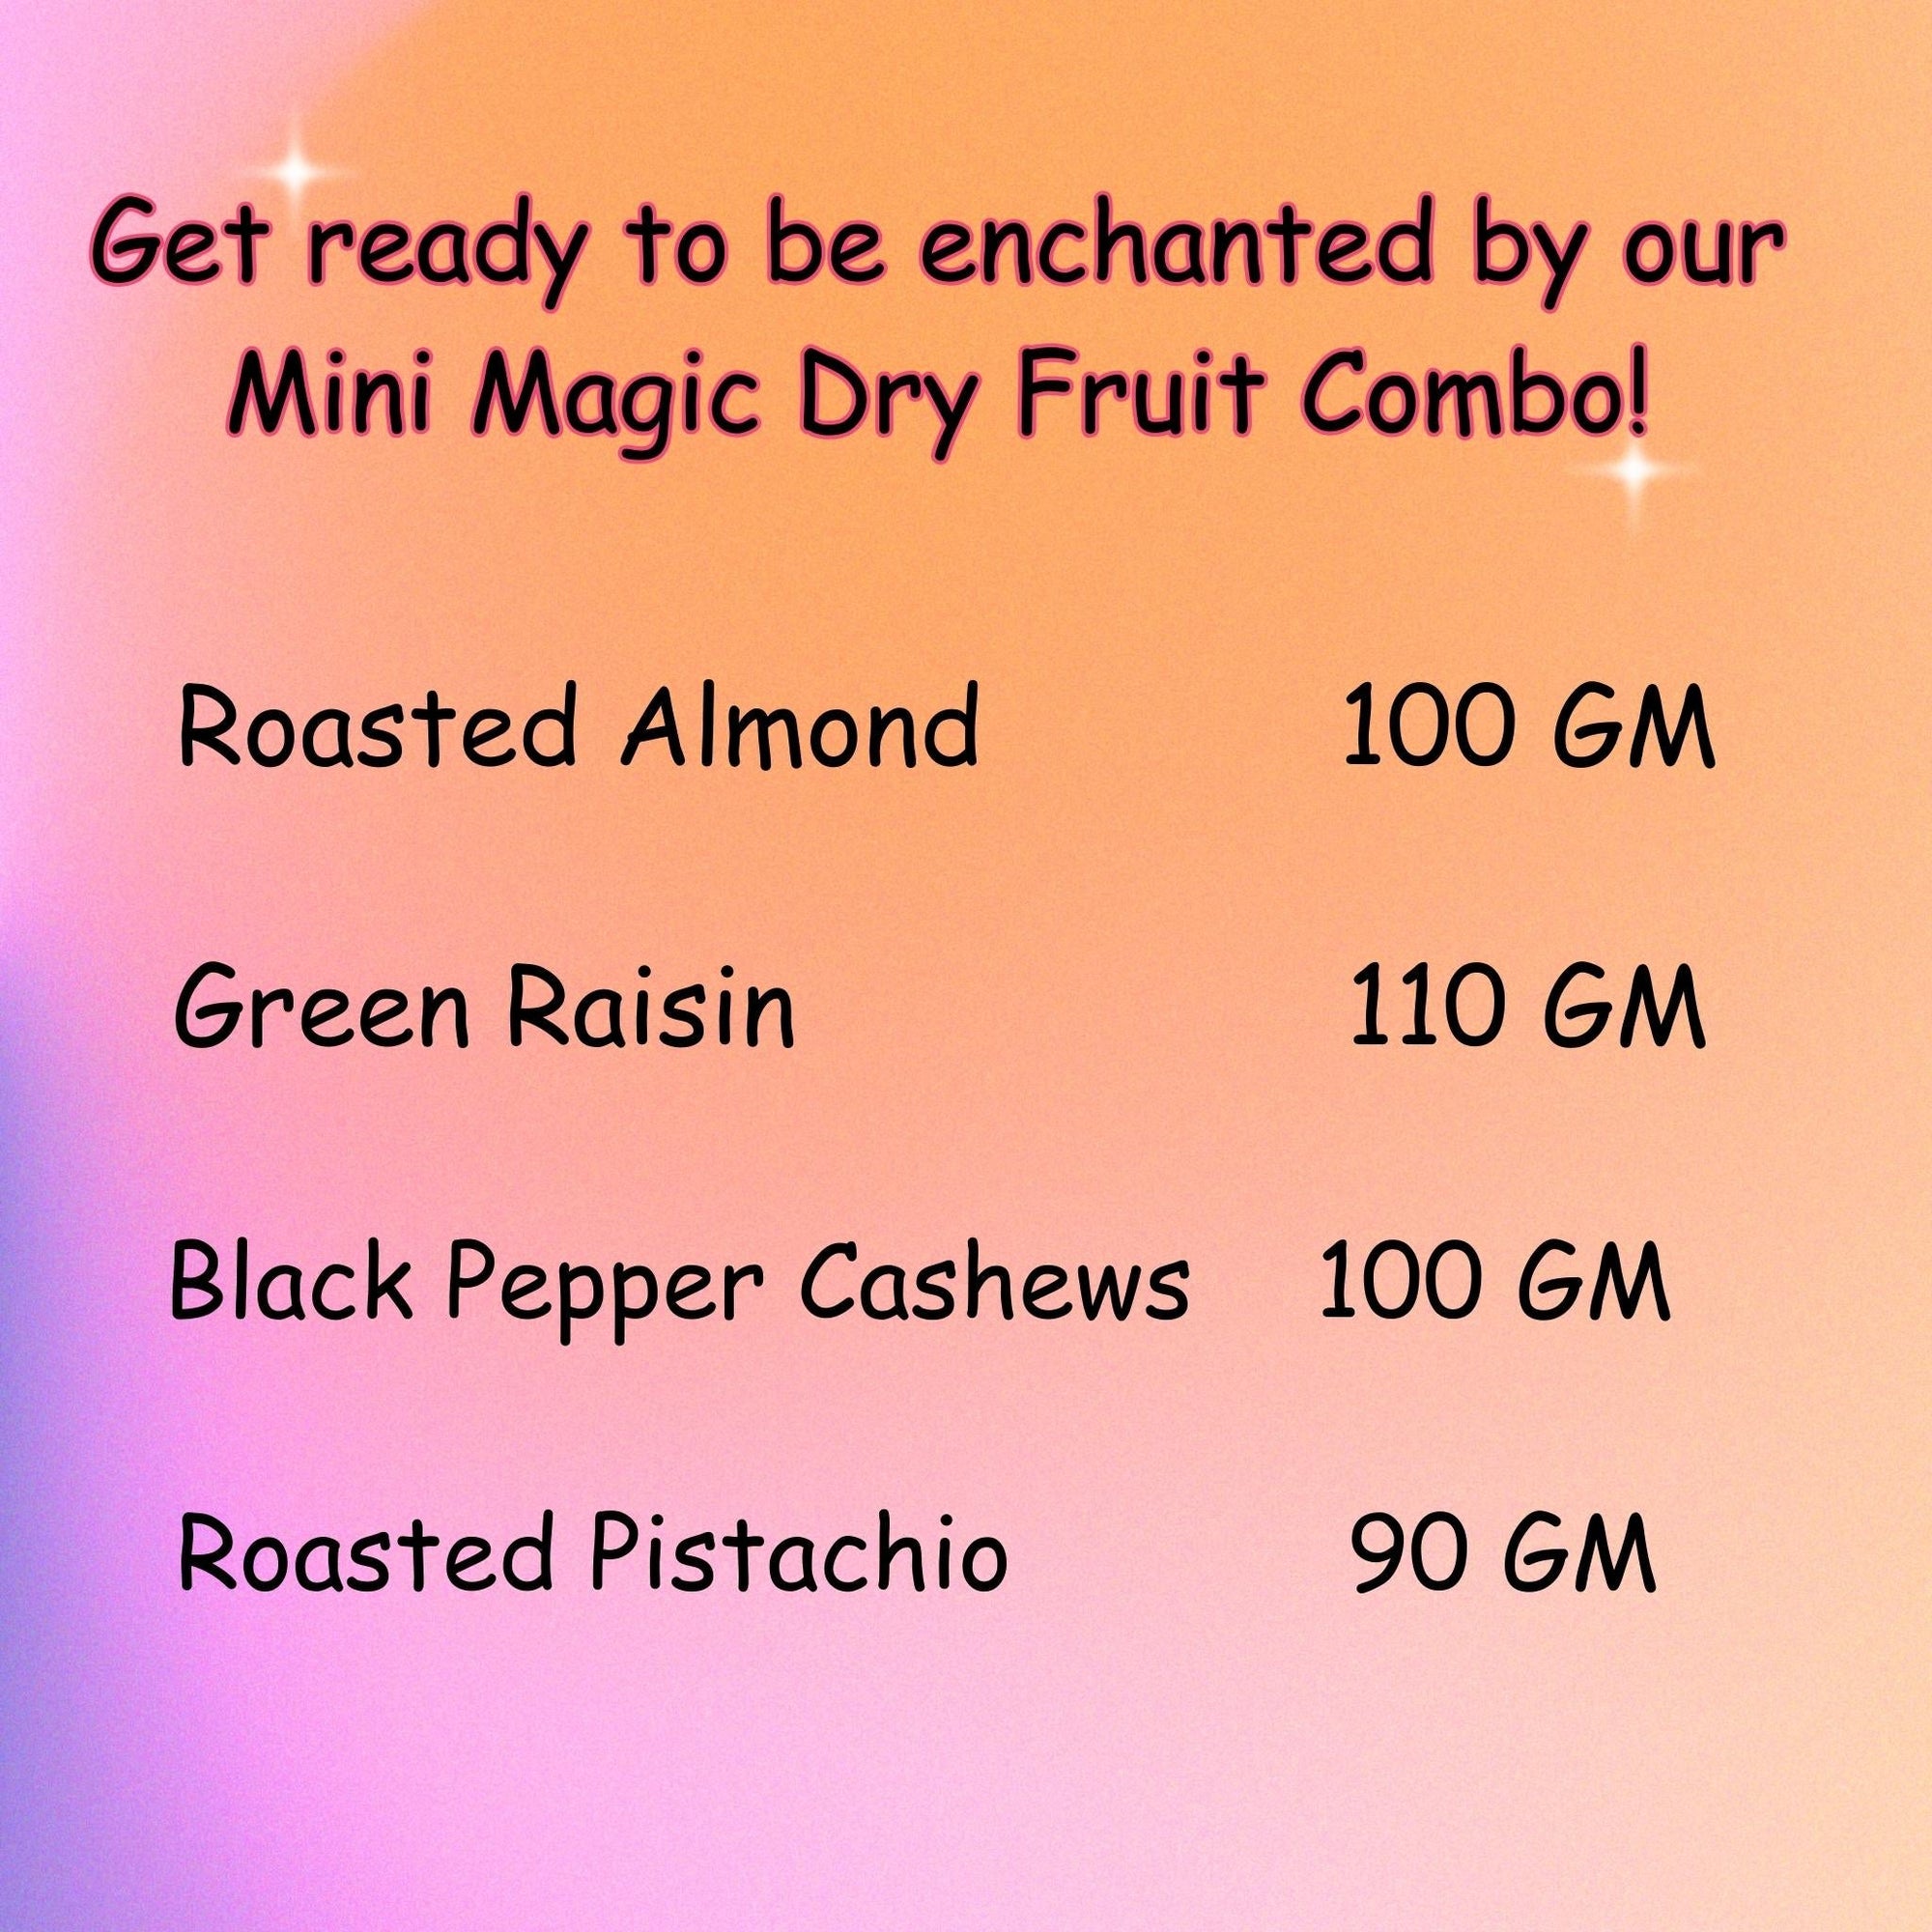 MINI MAGIC DRY FRUIT COMBO3